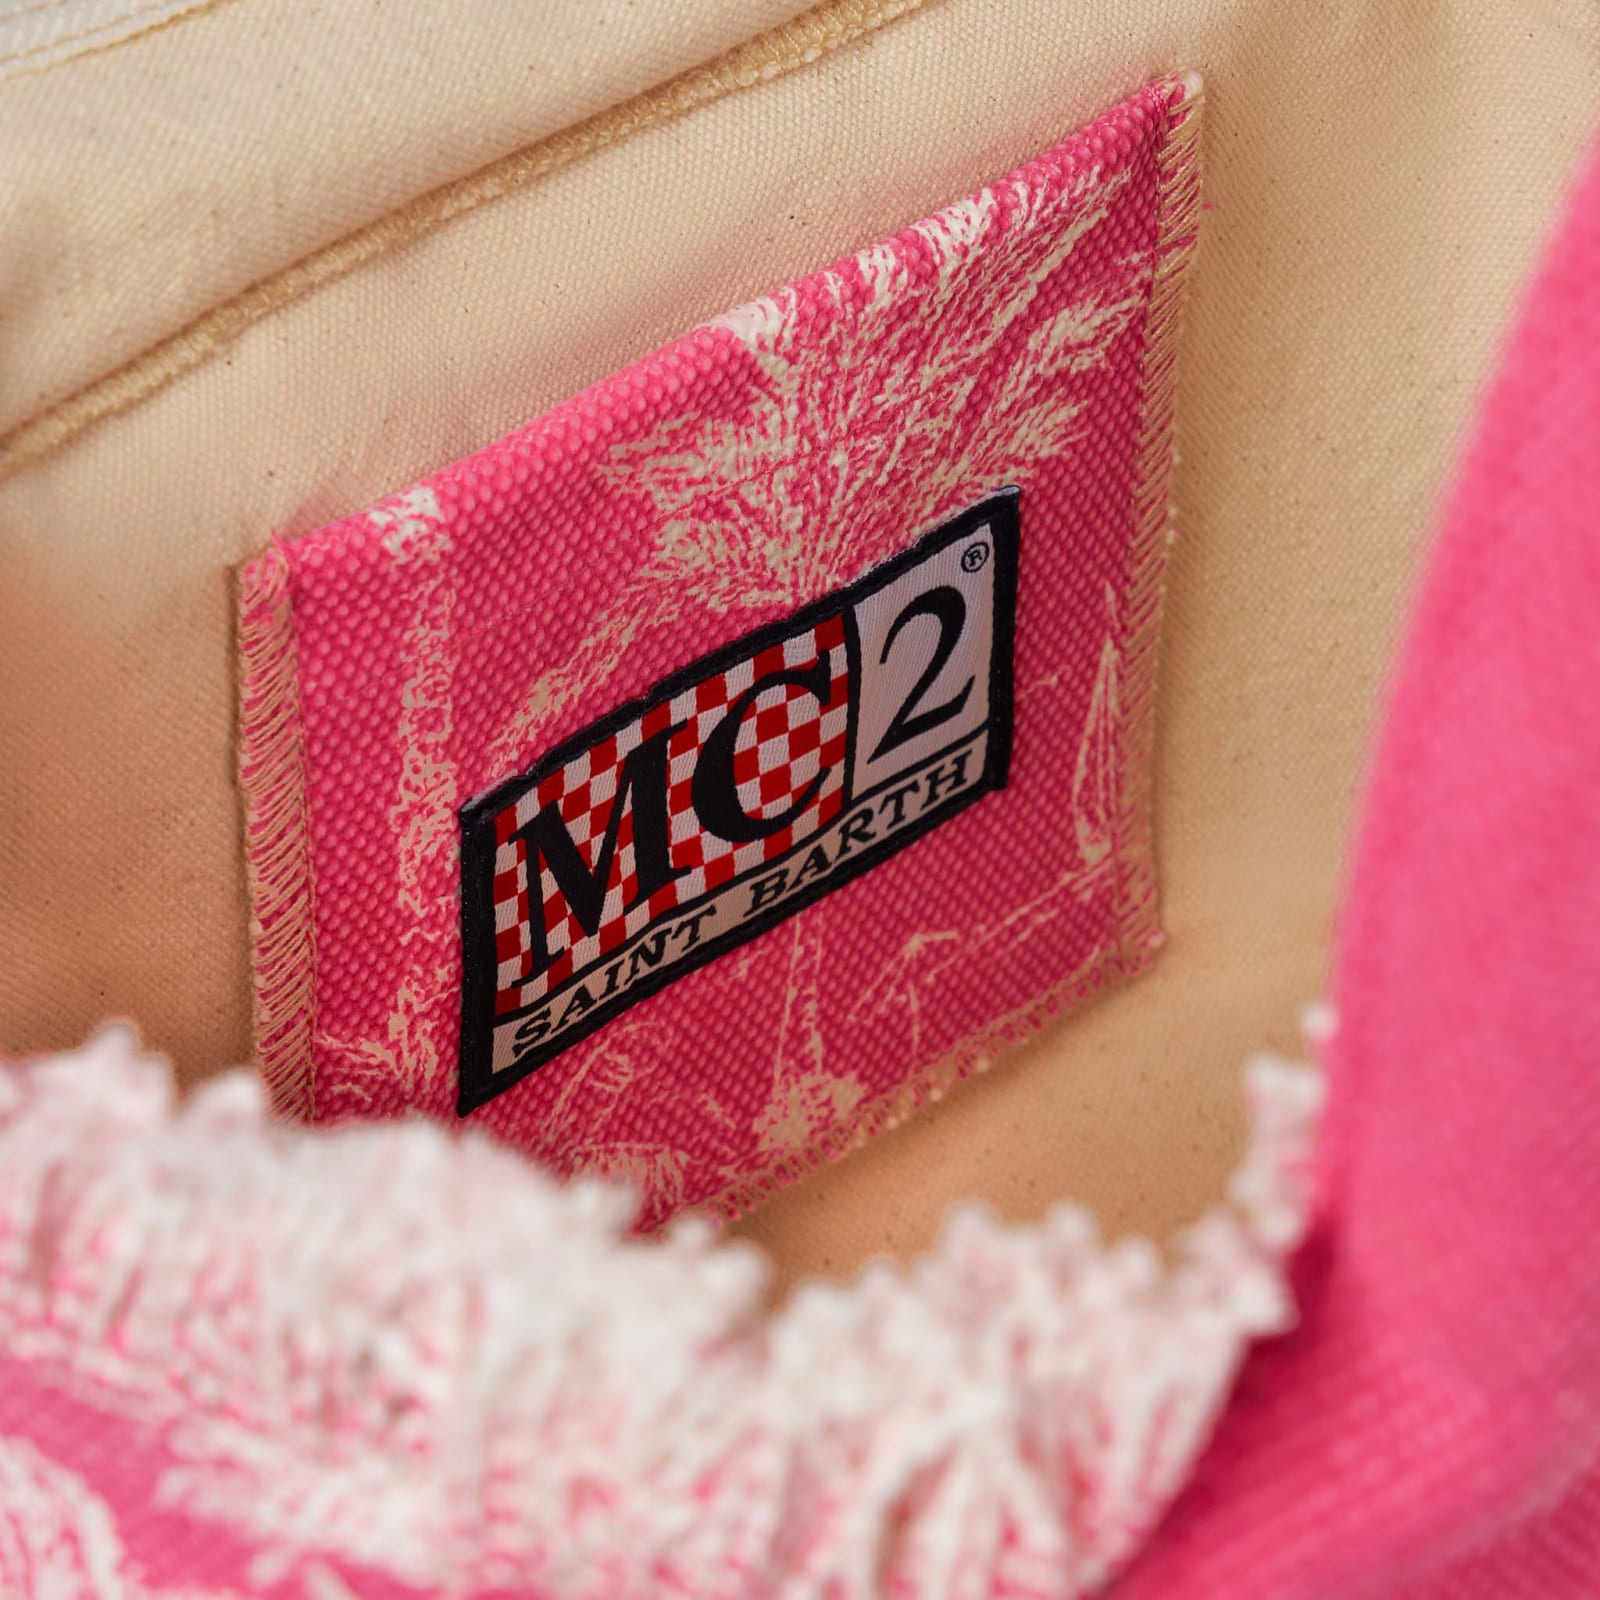 Shop Mc2 Saint Barth Colette Pink Cotton Canvas Handbag With Toile De Jouy Print